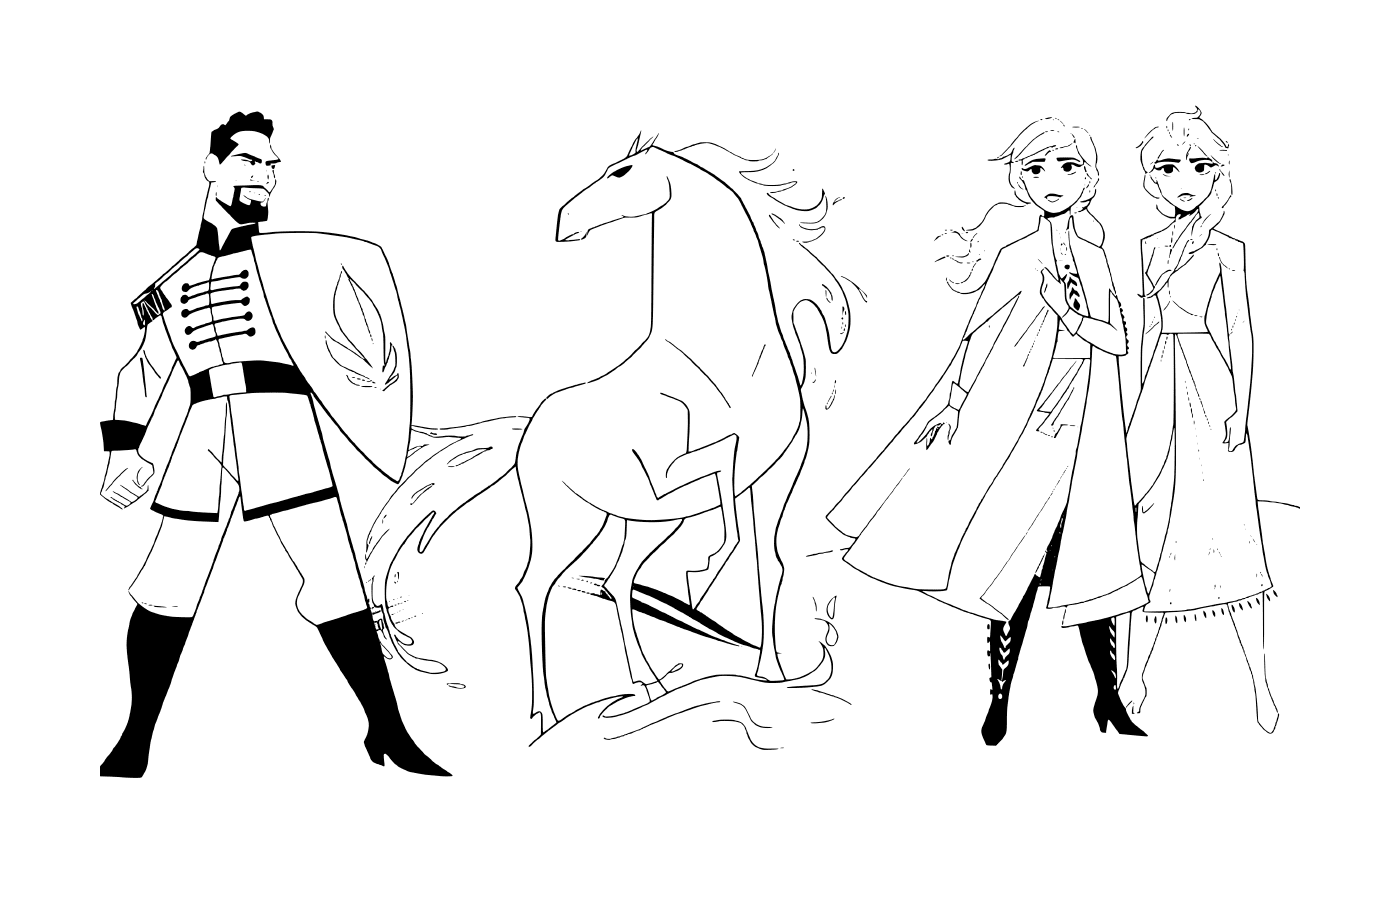  Anna ed Elsa con il cavallo Nokk contro il tenente Mattias della Regina delle Nevi 2 